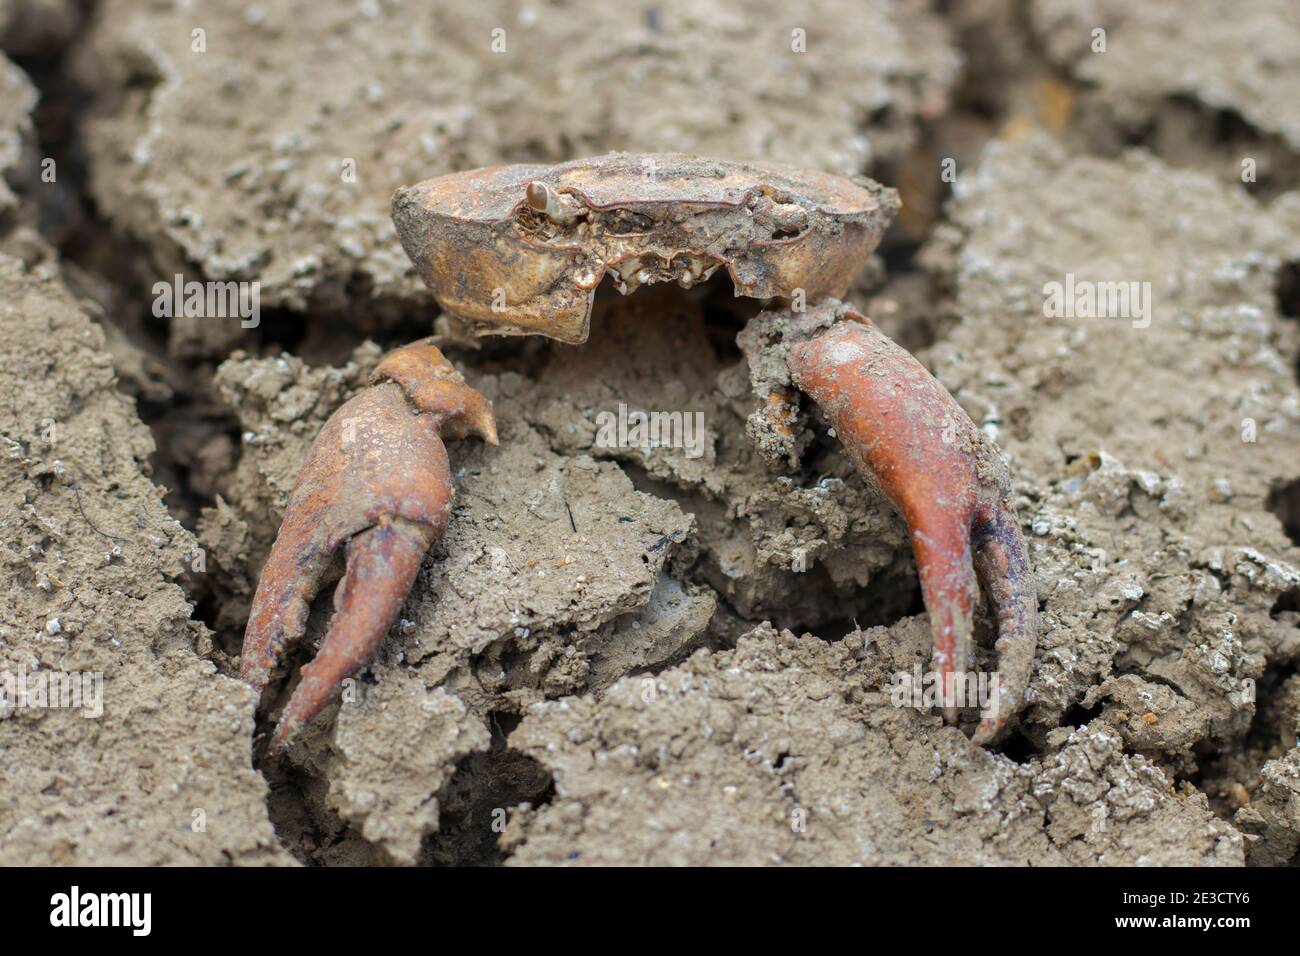 Eine tote Krabbe ist auf dem rauen Boden zu sehen. Mangel an Wasser hat das Leben gekostet Stockfoto